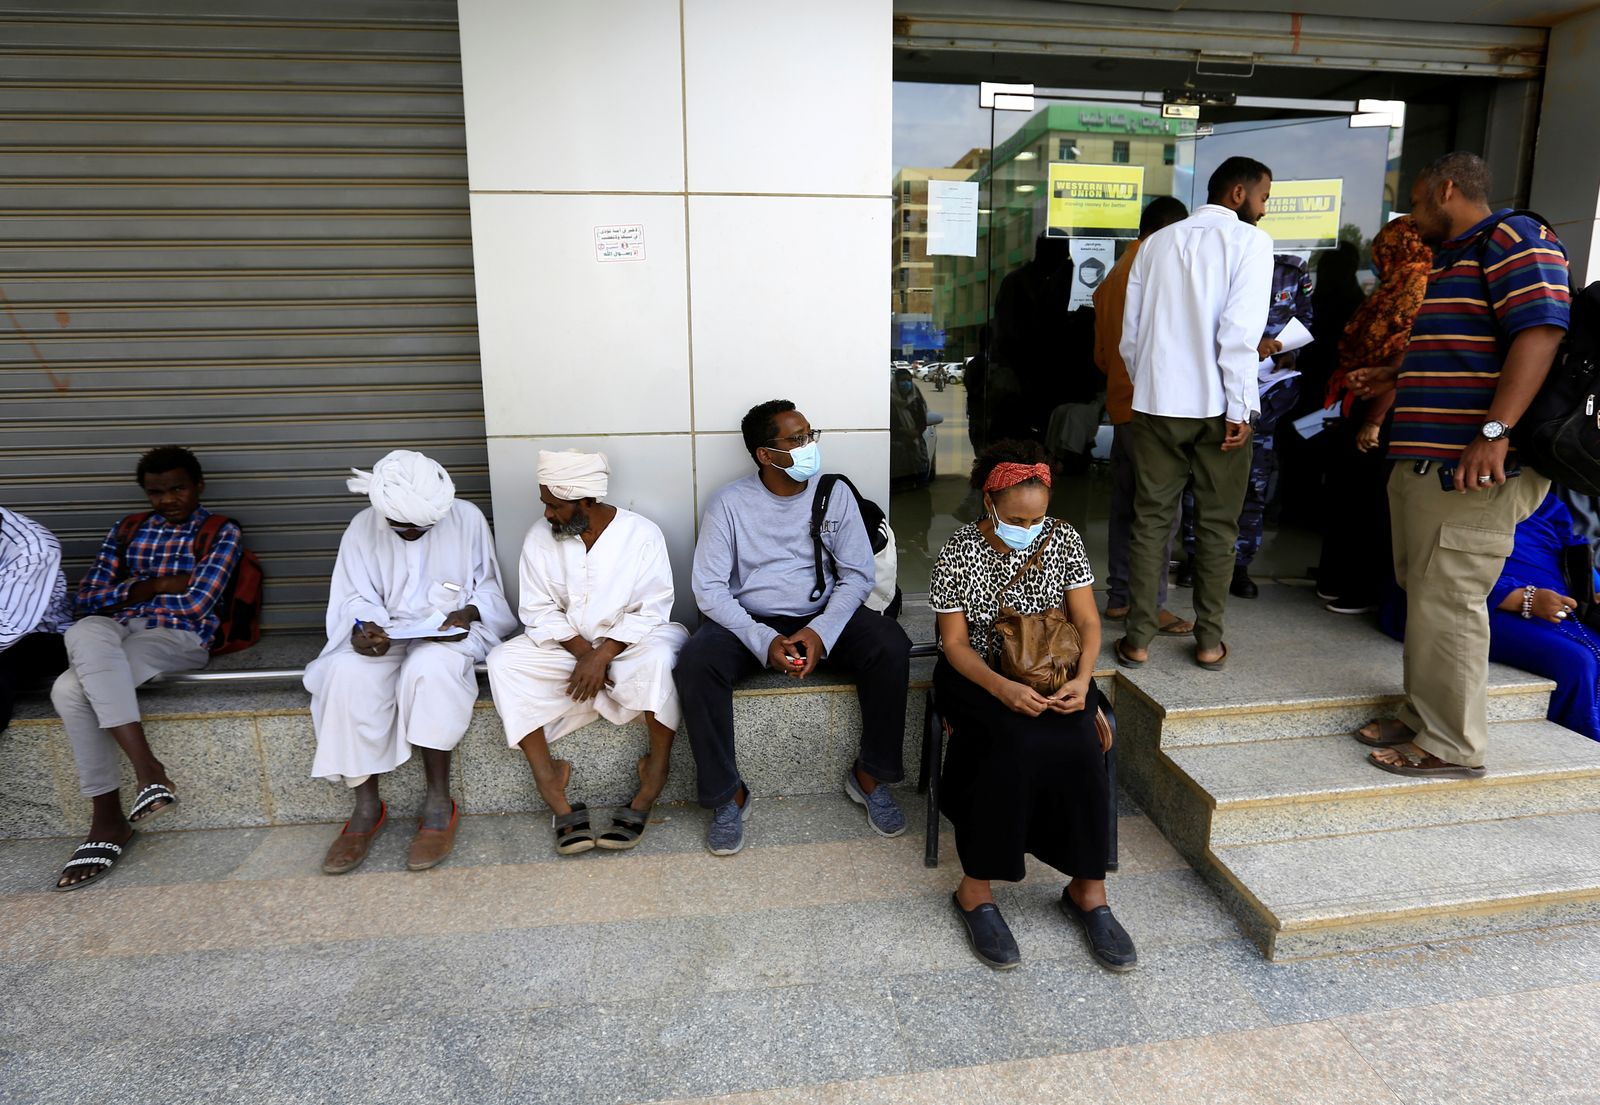 أشخاص ينتظرون خارج مكتب لصرف العملات في الخرطوم، 28 فبراير 2021 - REUTERS